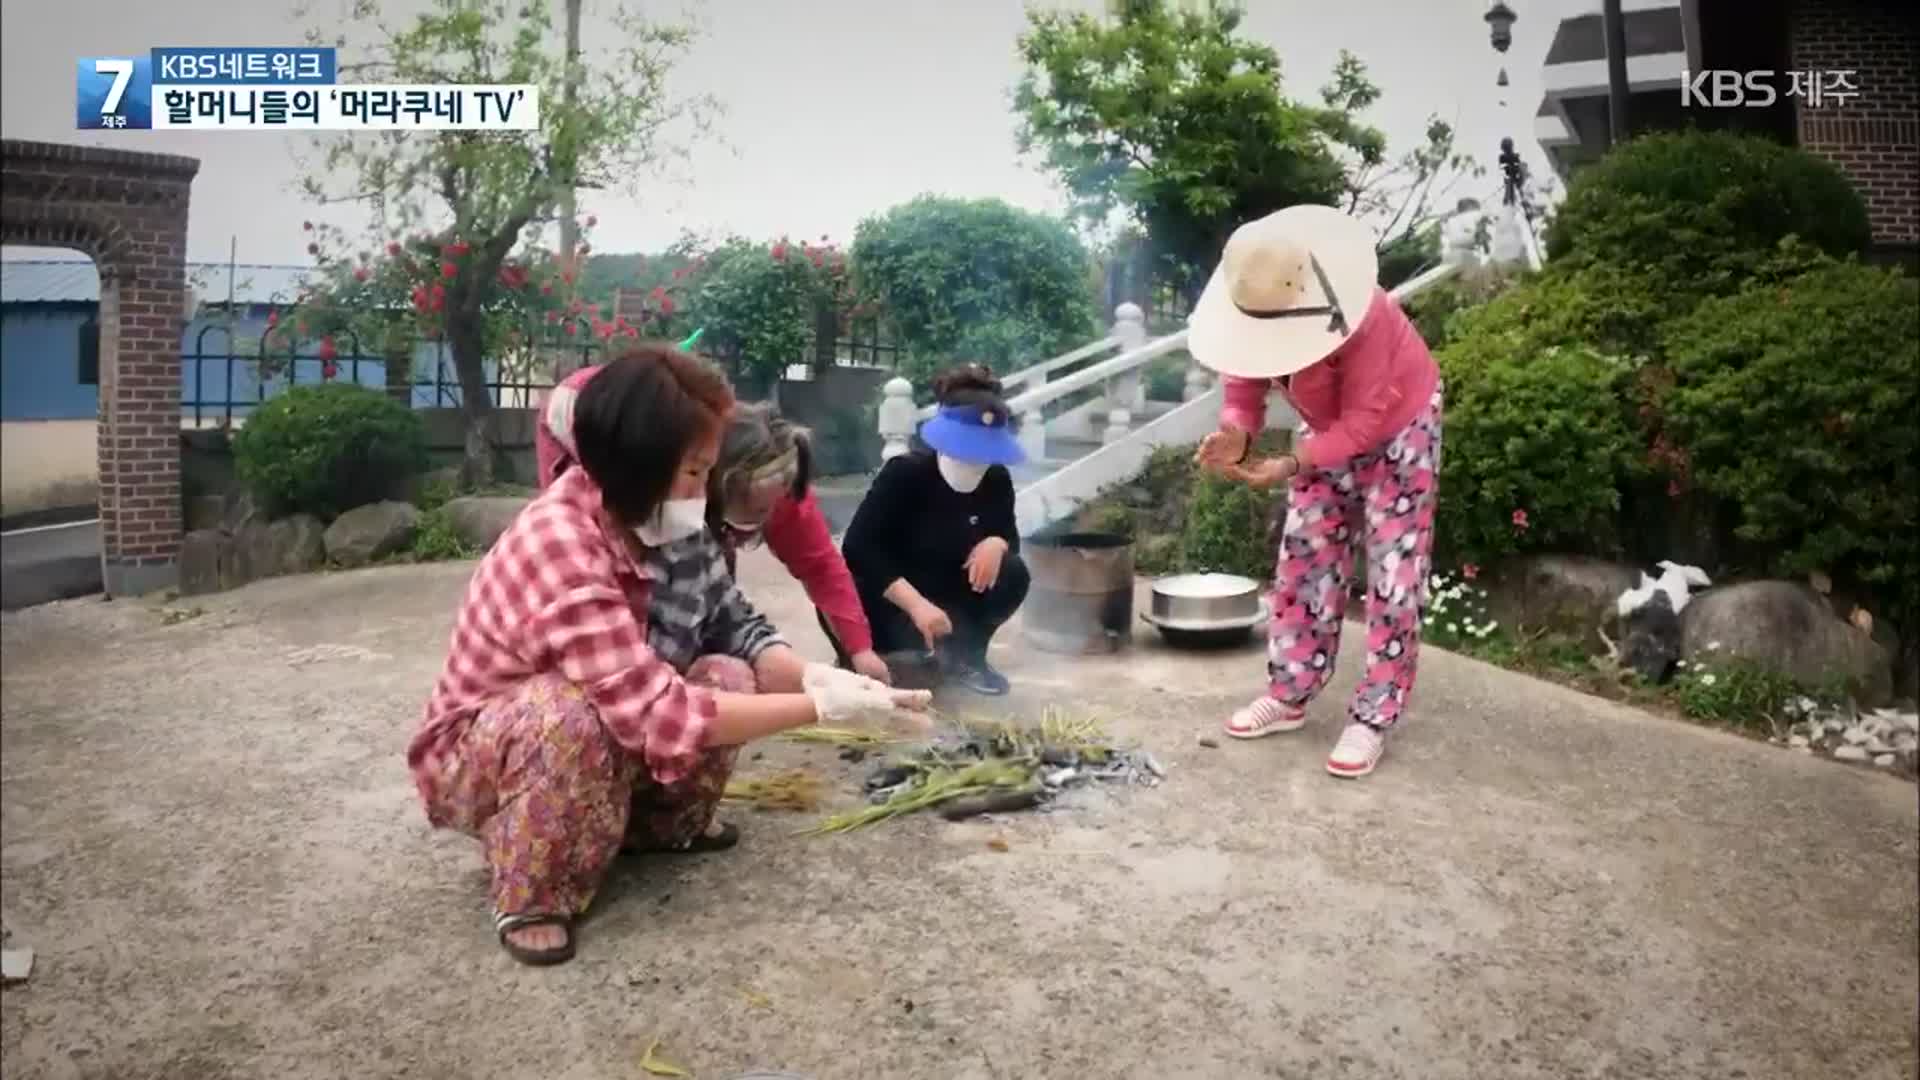 [KBS네트워크] 할머니 전성시대! 머라쿠네TV